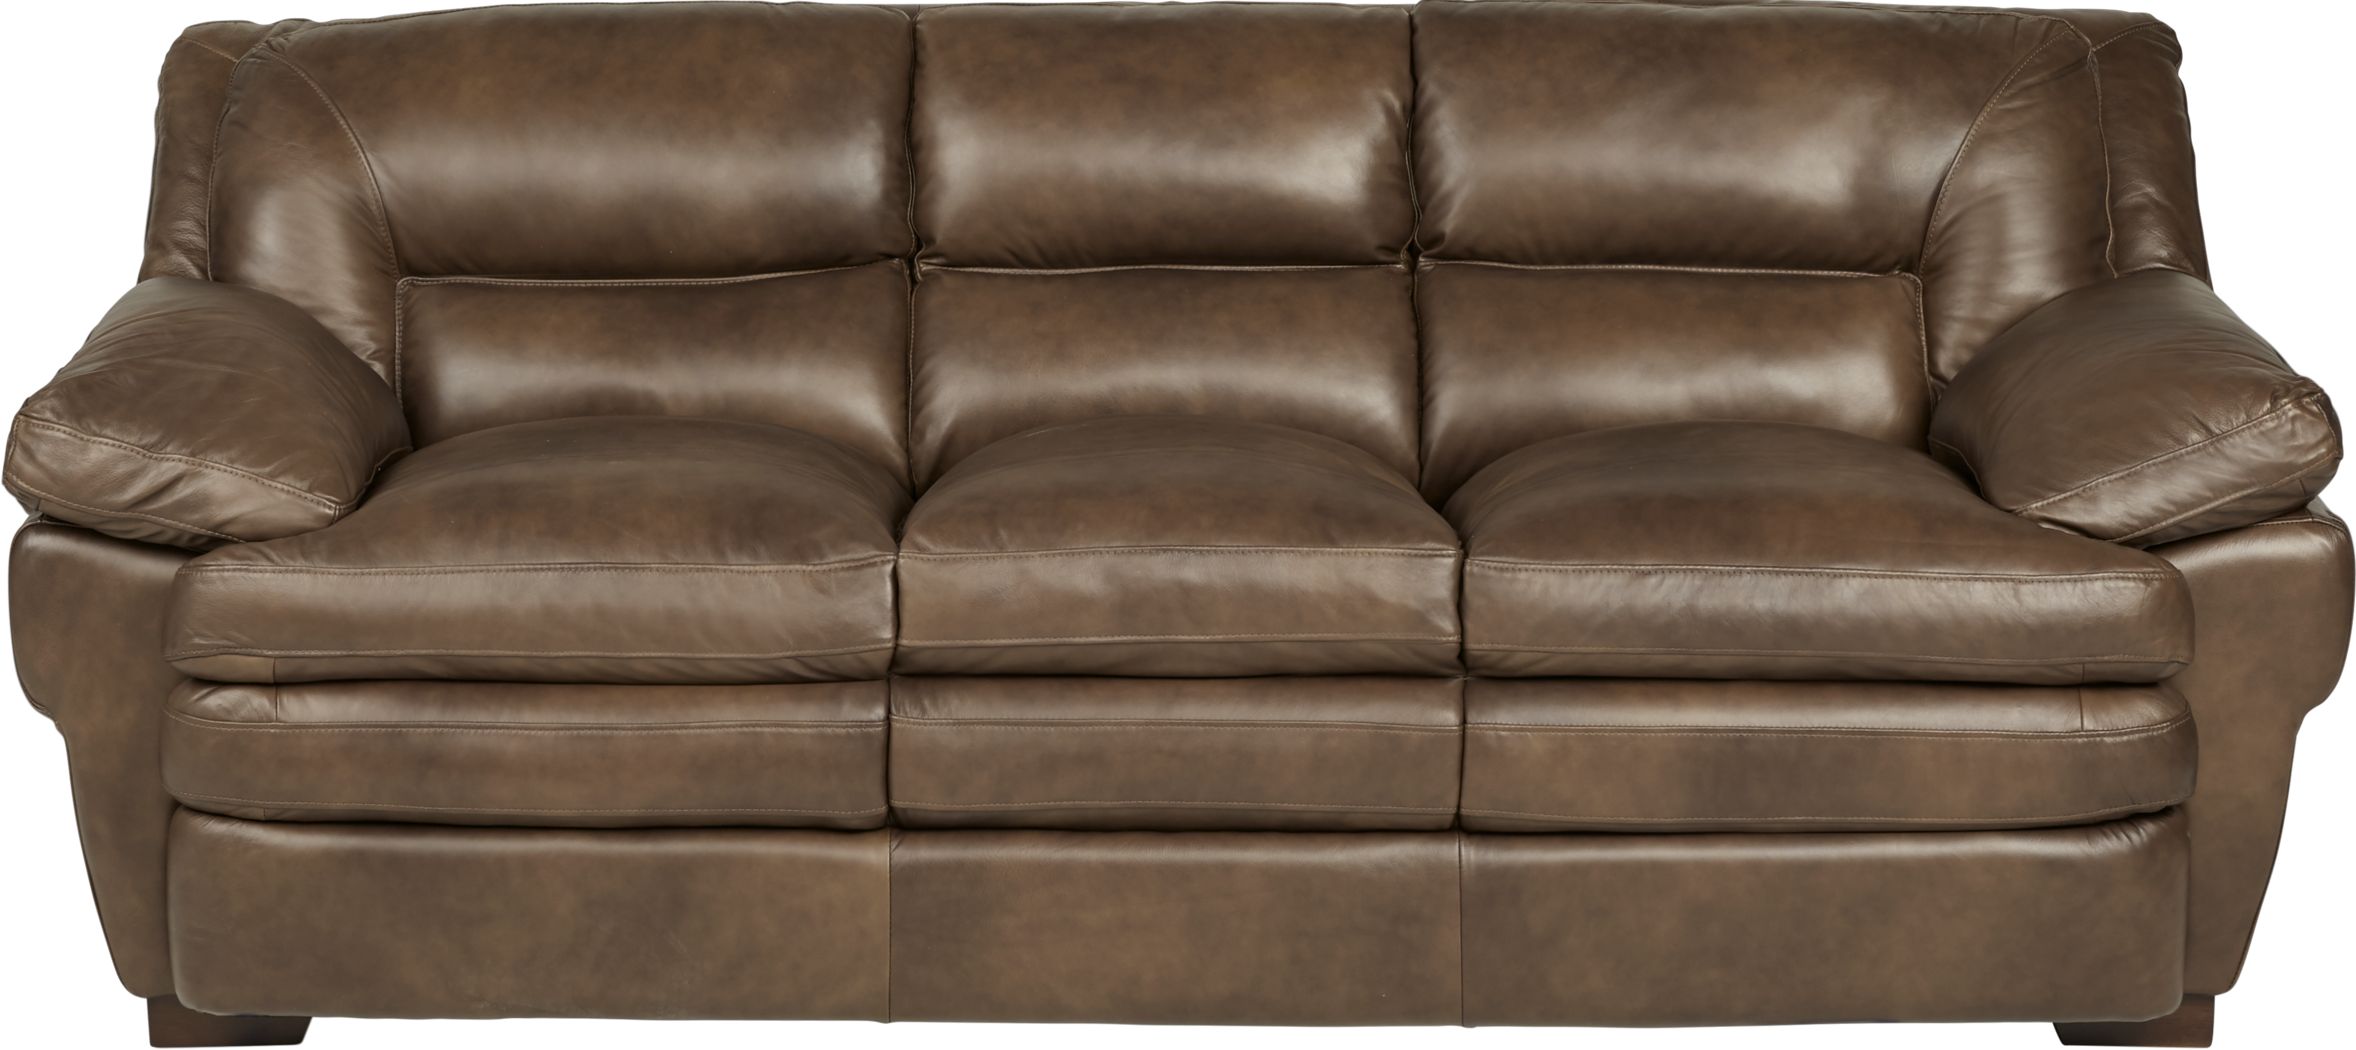 aventino tobacco leather sofa